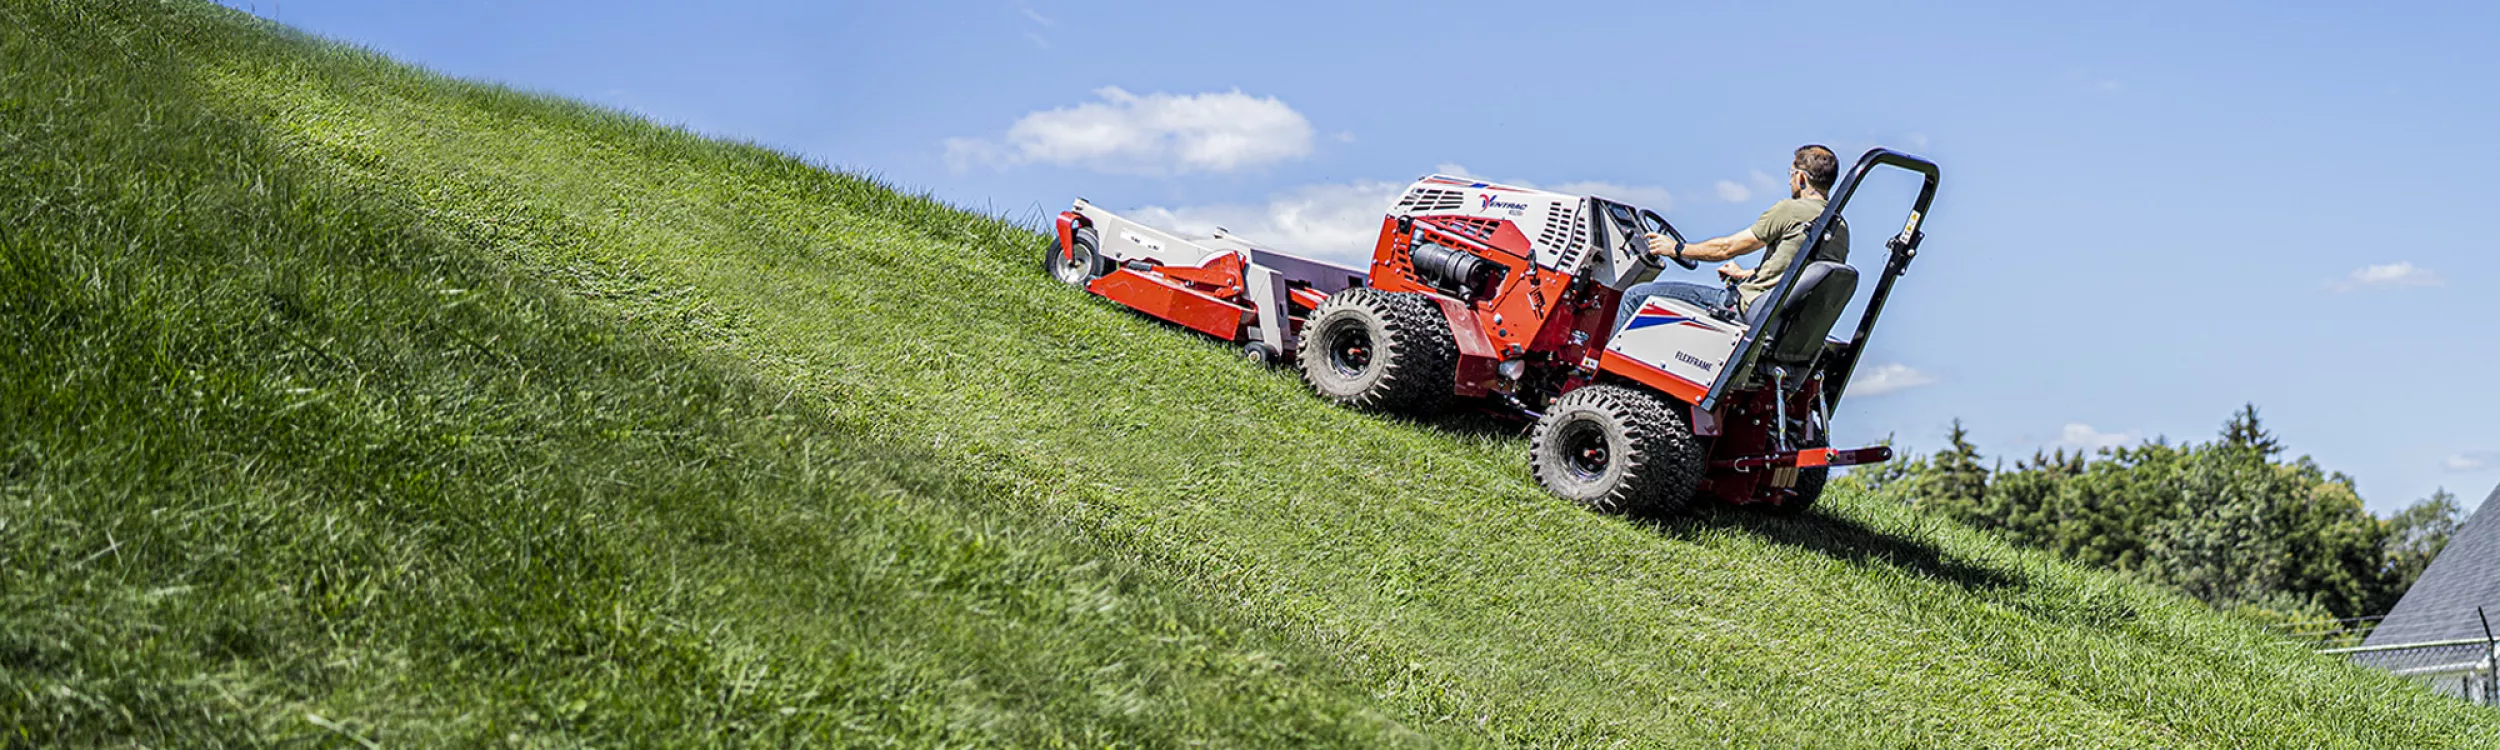 Ventrac 4520 : le tracteur tout-terrain qui allie performance et sécurité